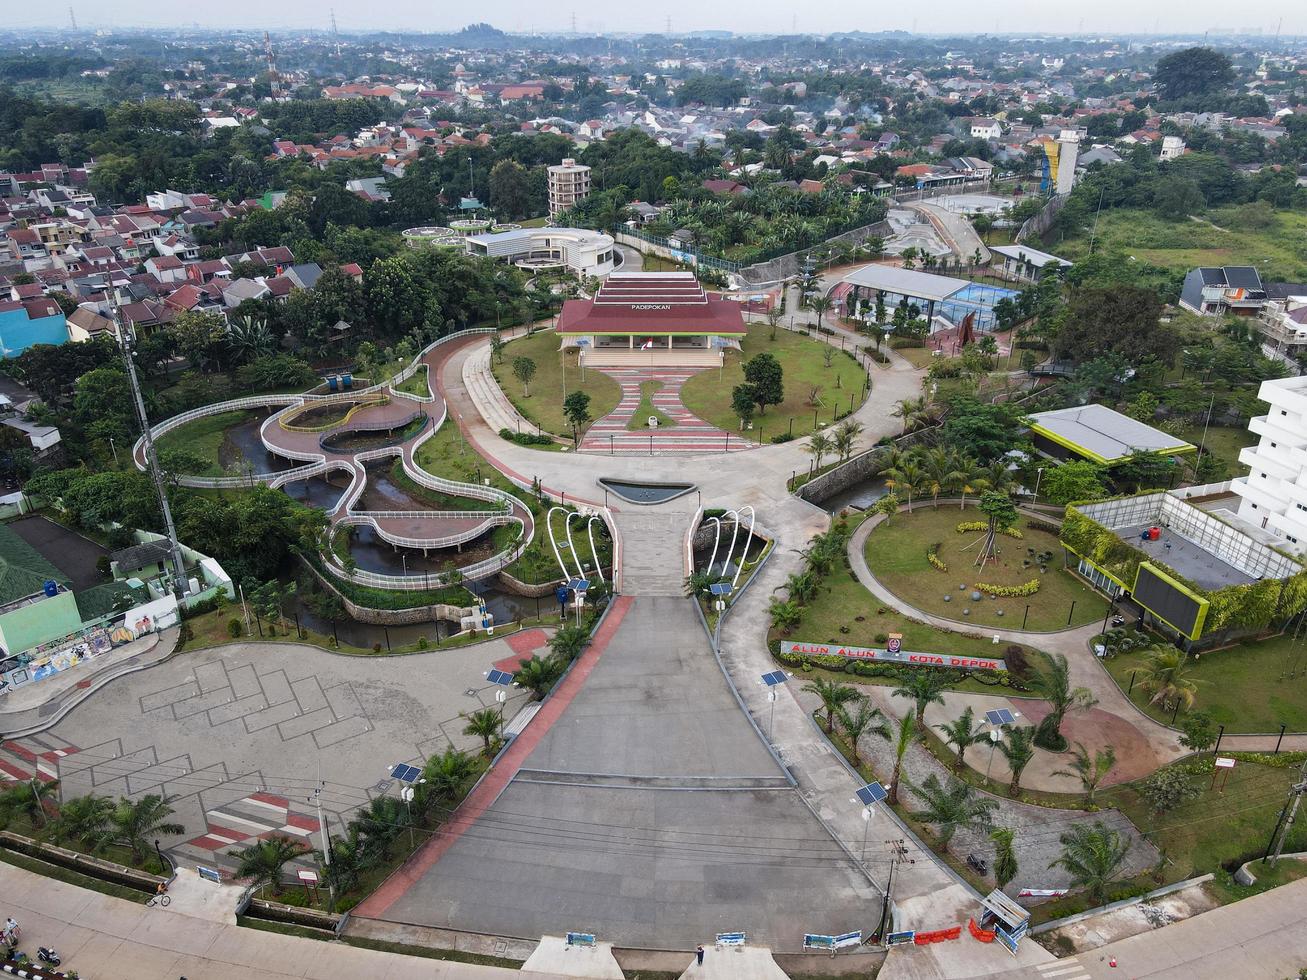 depok, indonesien 2021 - Luftaufnahme des Spielplatzhofs im öffentlichen Park, umgeben von grünen Bäumen foto